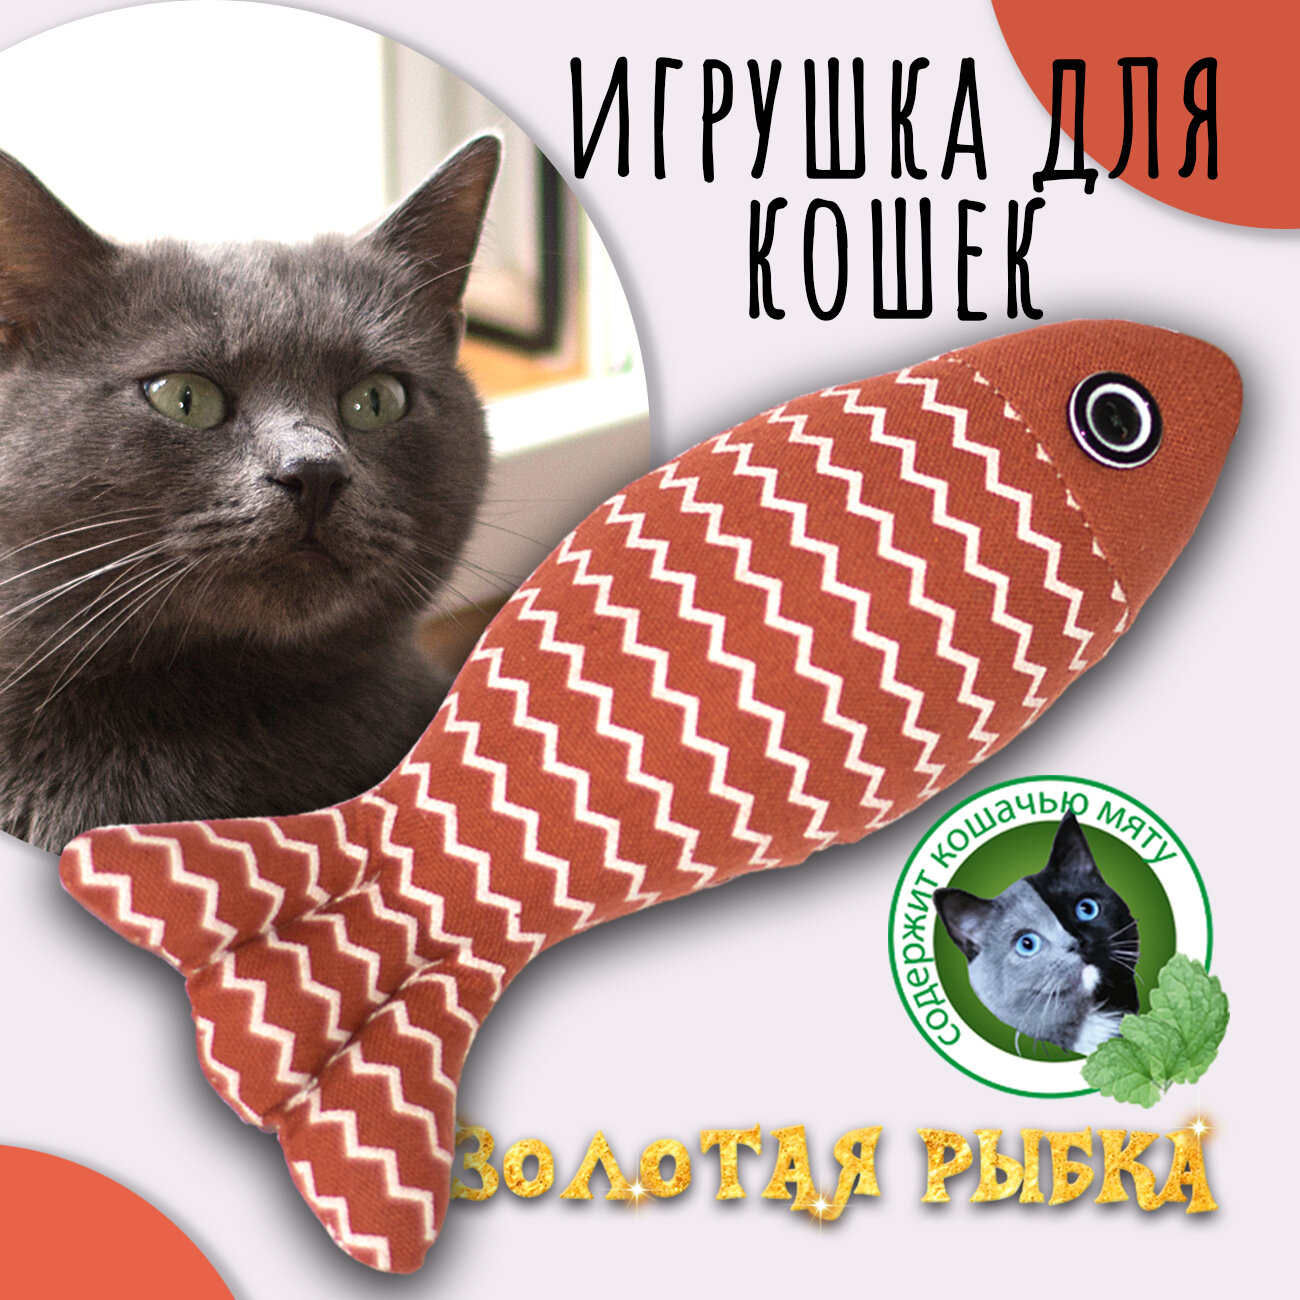 Золотая рыбка" (красная), Priopetko. Игрушка для кошек, содержит кошачью мяту. Коллекция "Золотая рыбка